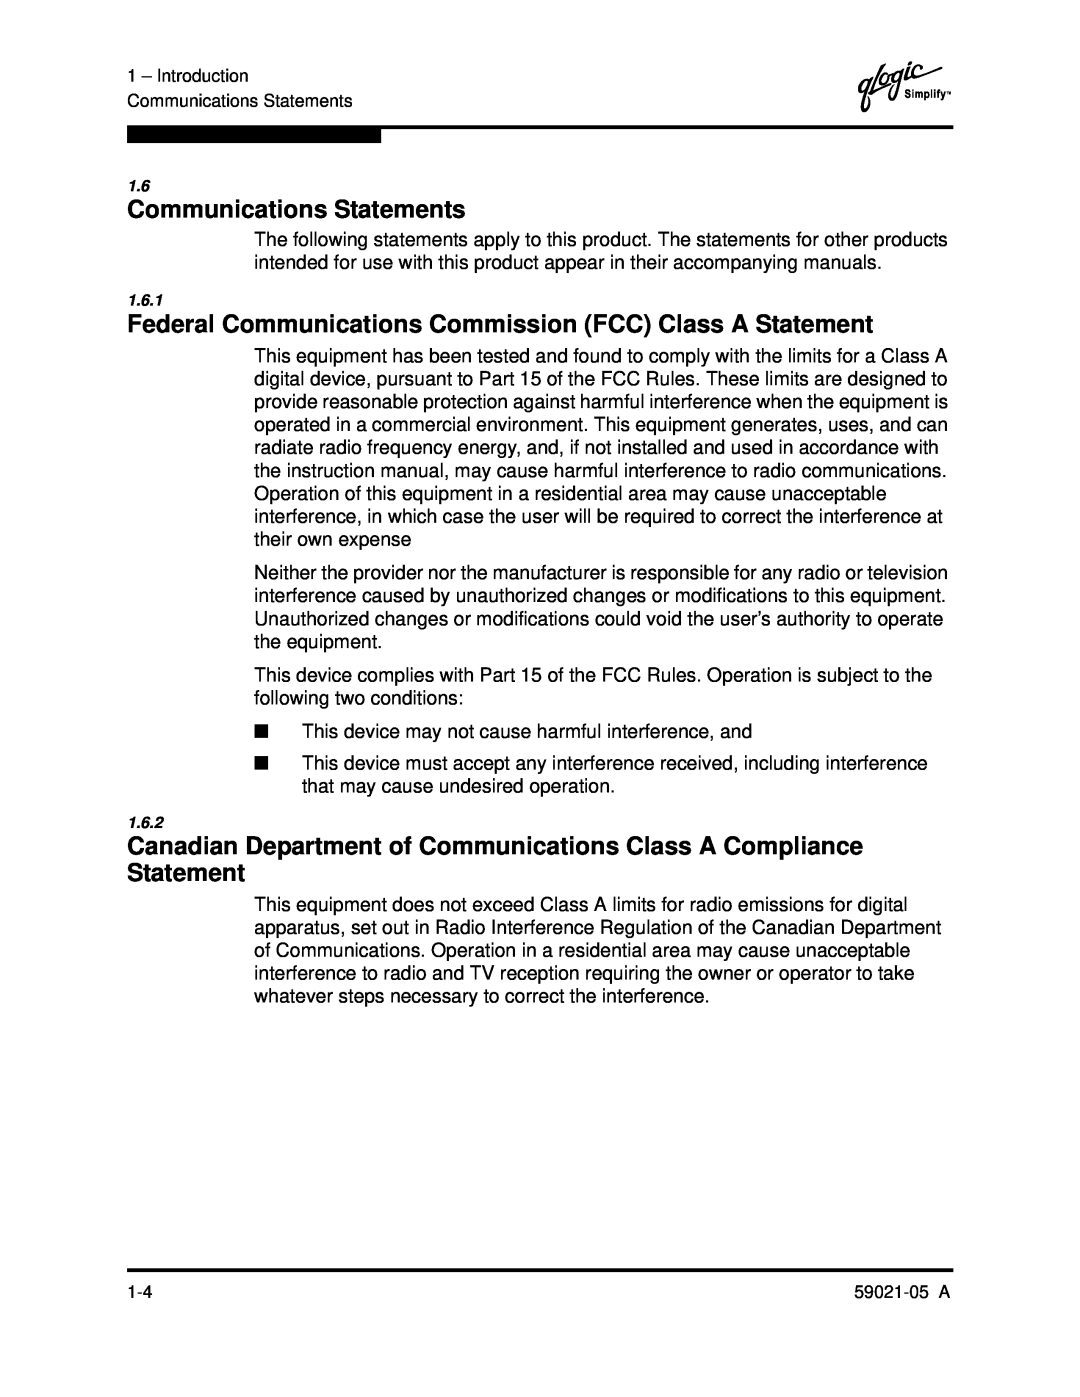 Q-Logic 59021-05 manual Communications Statements, Federal Communications Commission FCC Class A Statement 